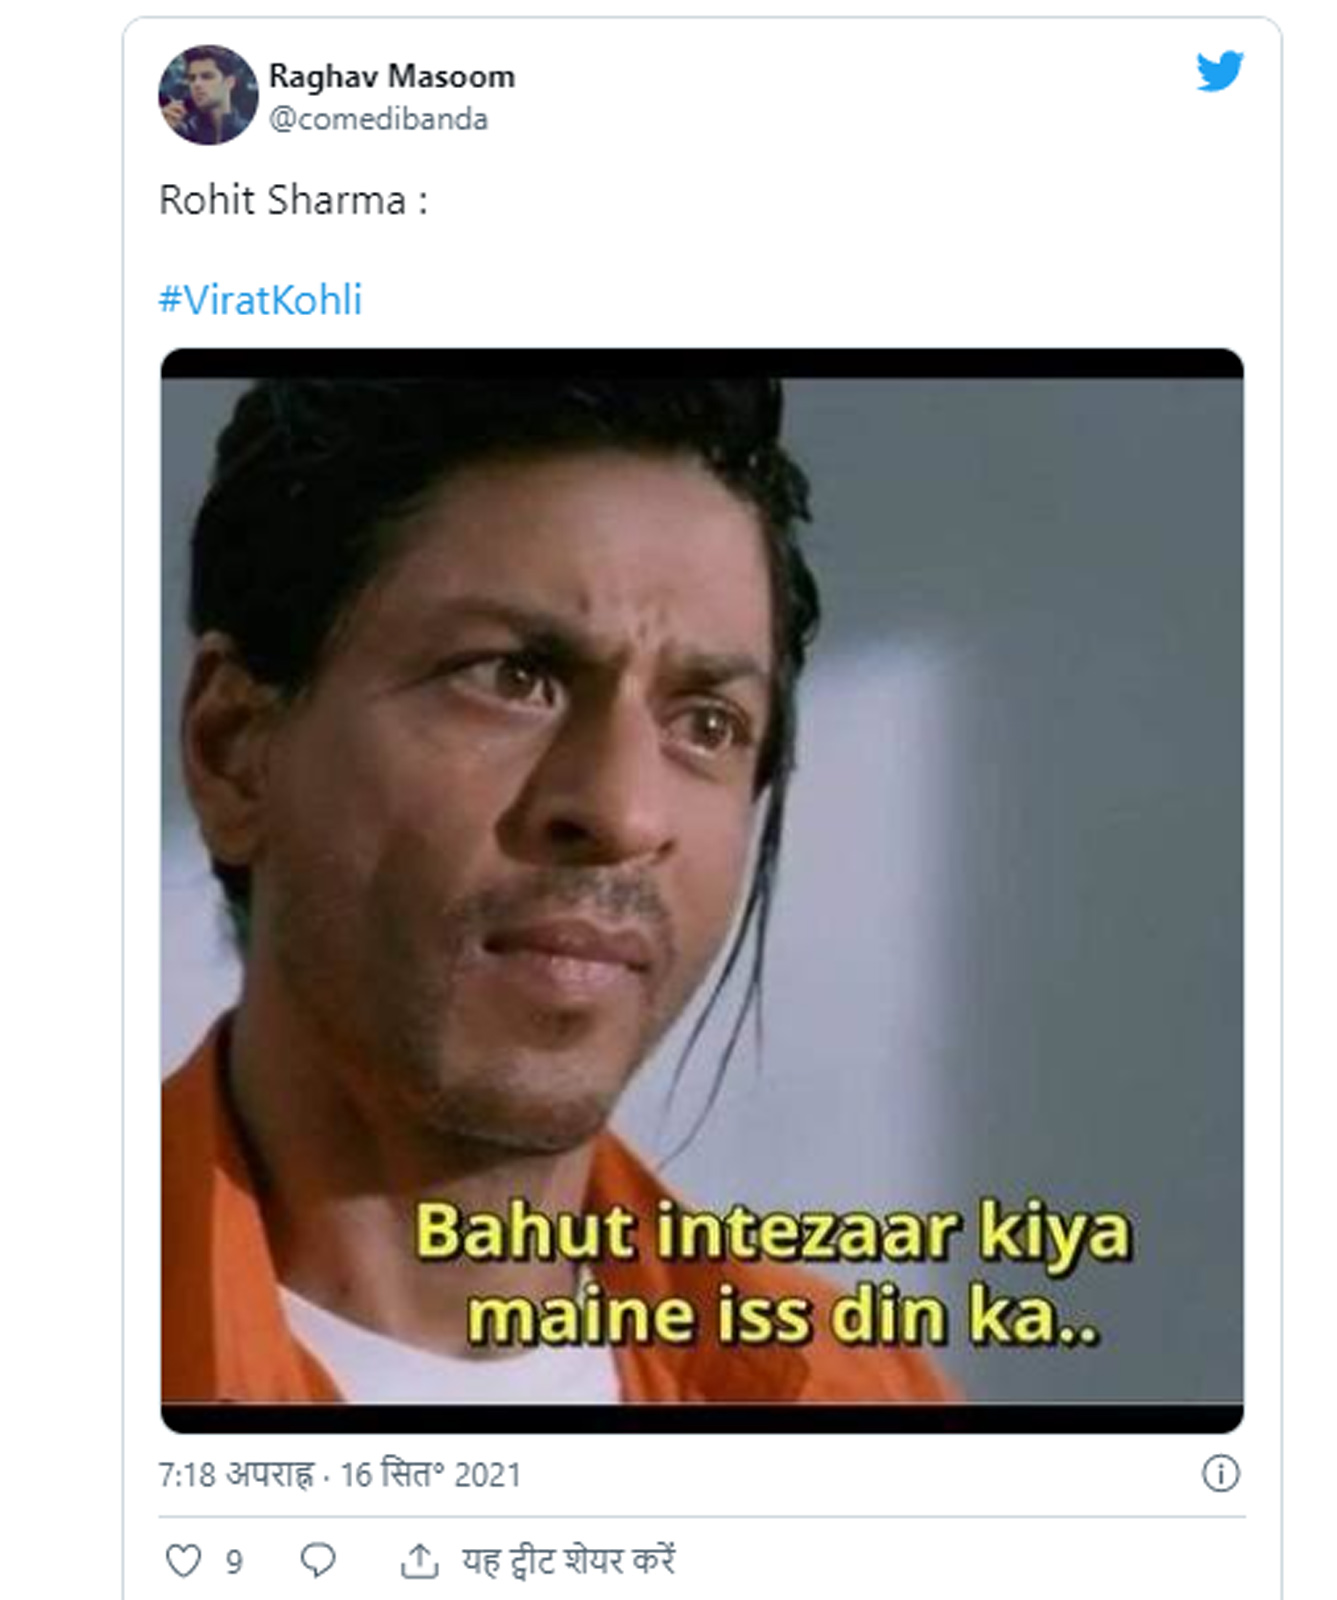  शाहरुख खान की एक तस्वीर वाला मीम भी शेयर किया गया है जिस पर लिखा है- बहुत इंतजार किया है मैंने इस दिन का. (Twitter)